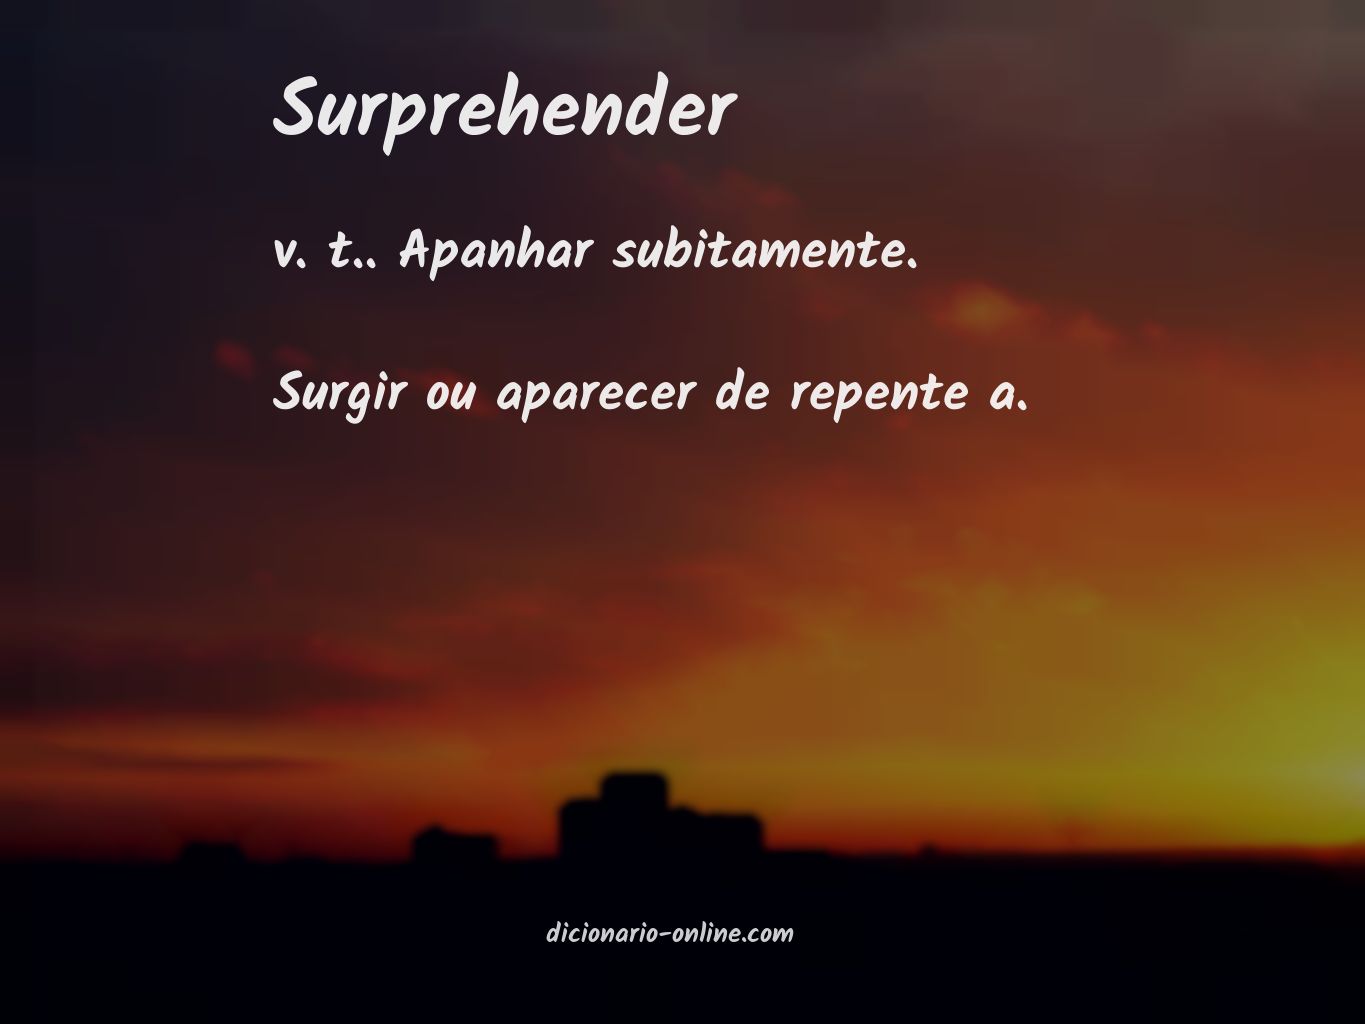 Significado de surprehender